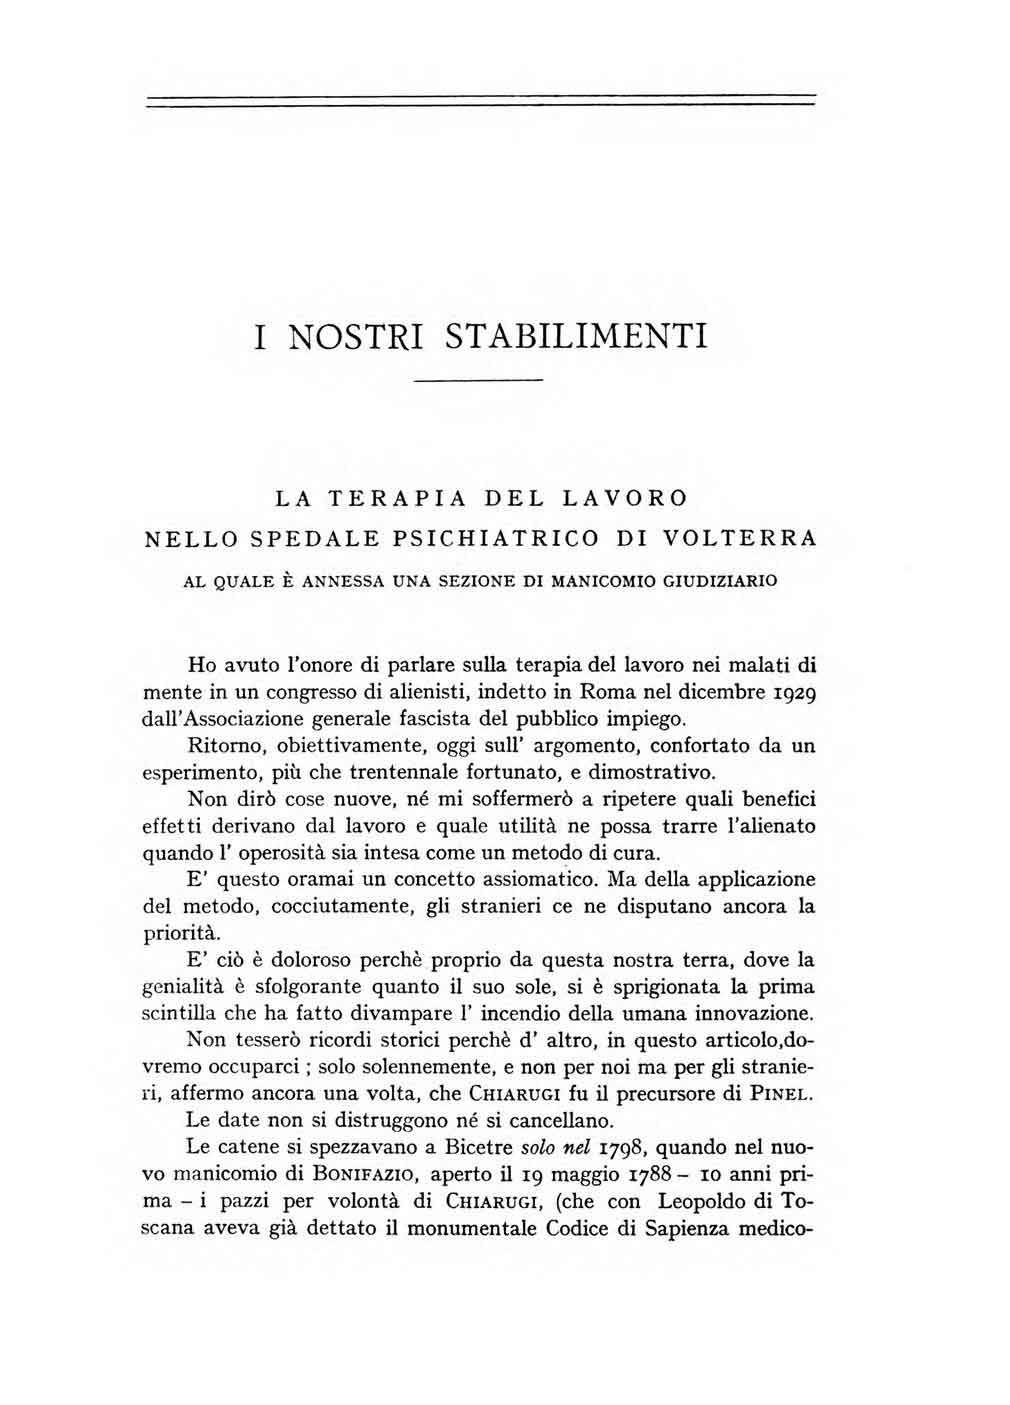 La terapia del lavoro nello spedale psichiatrico di Volterra (1933)